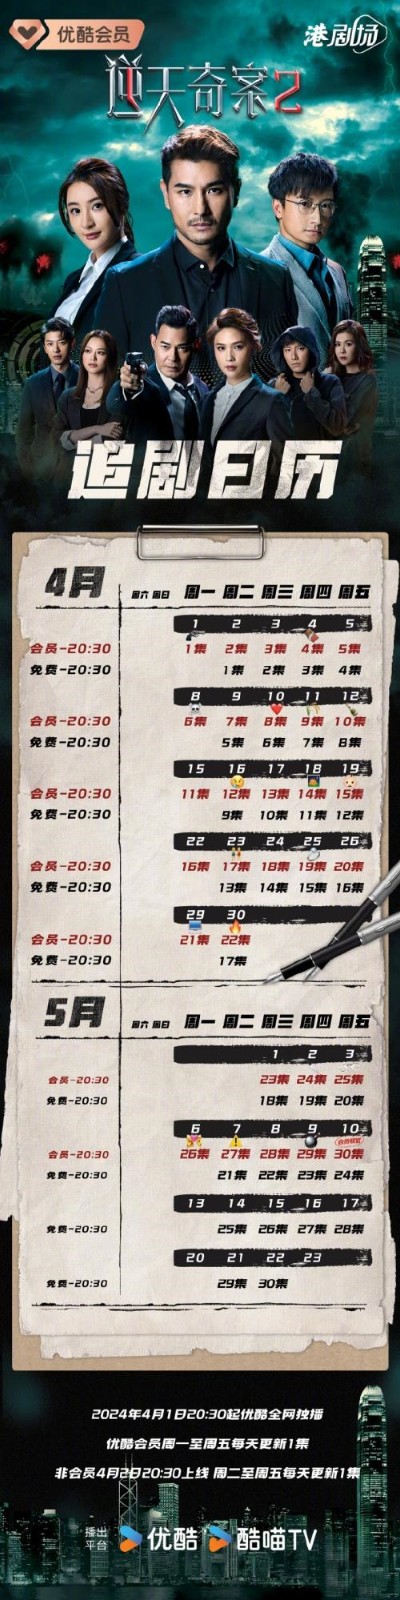 港剧《逆天奇案2》更新时间及追剧日历表 《逆天奇案2》剧情介绍